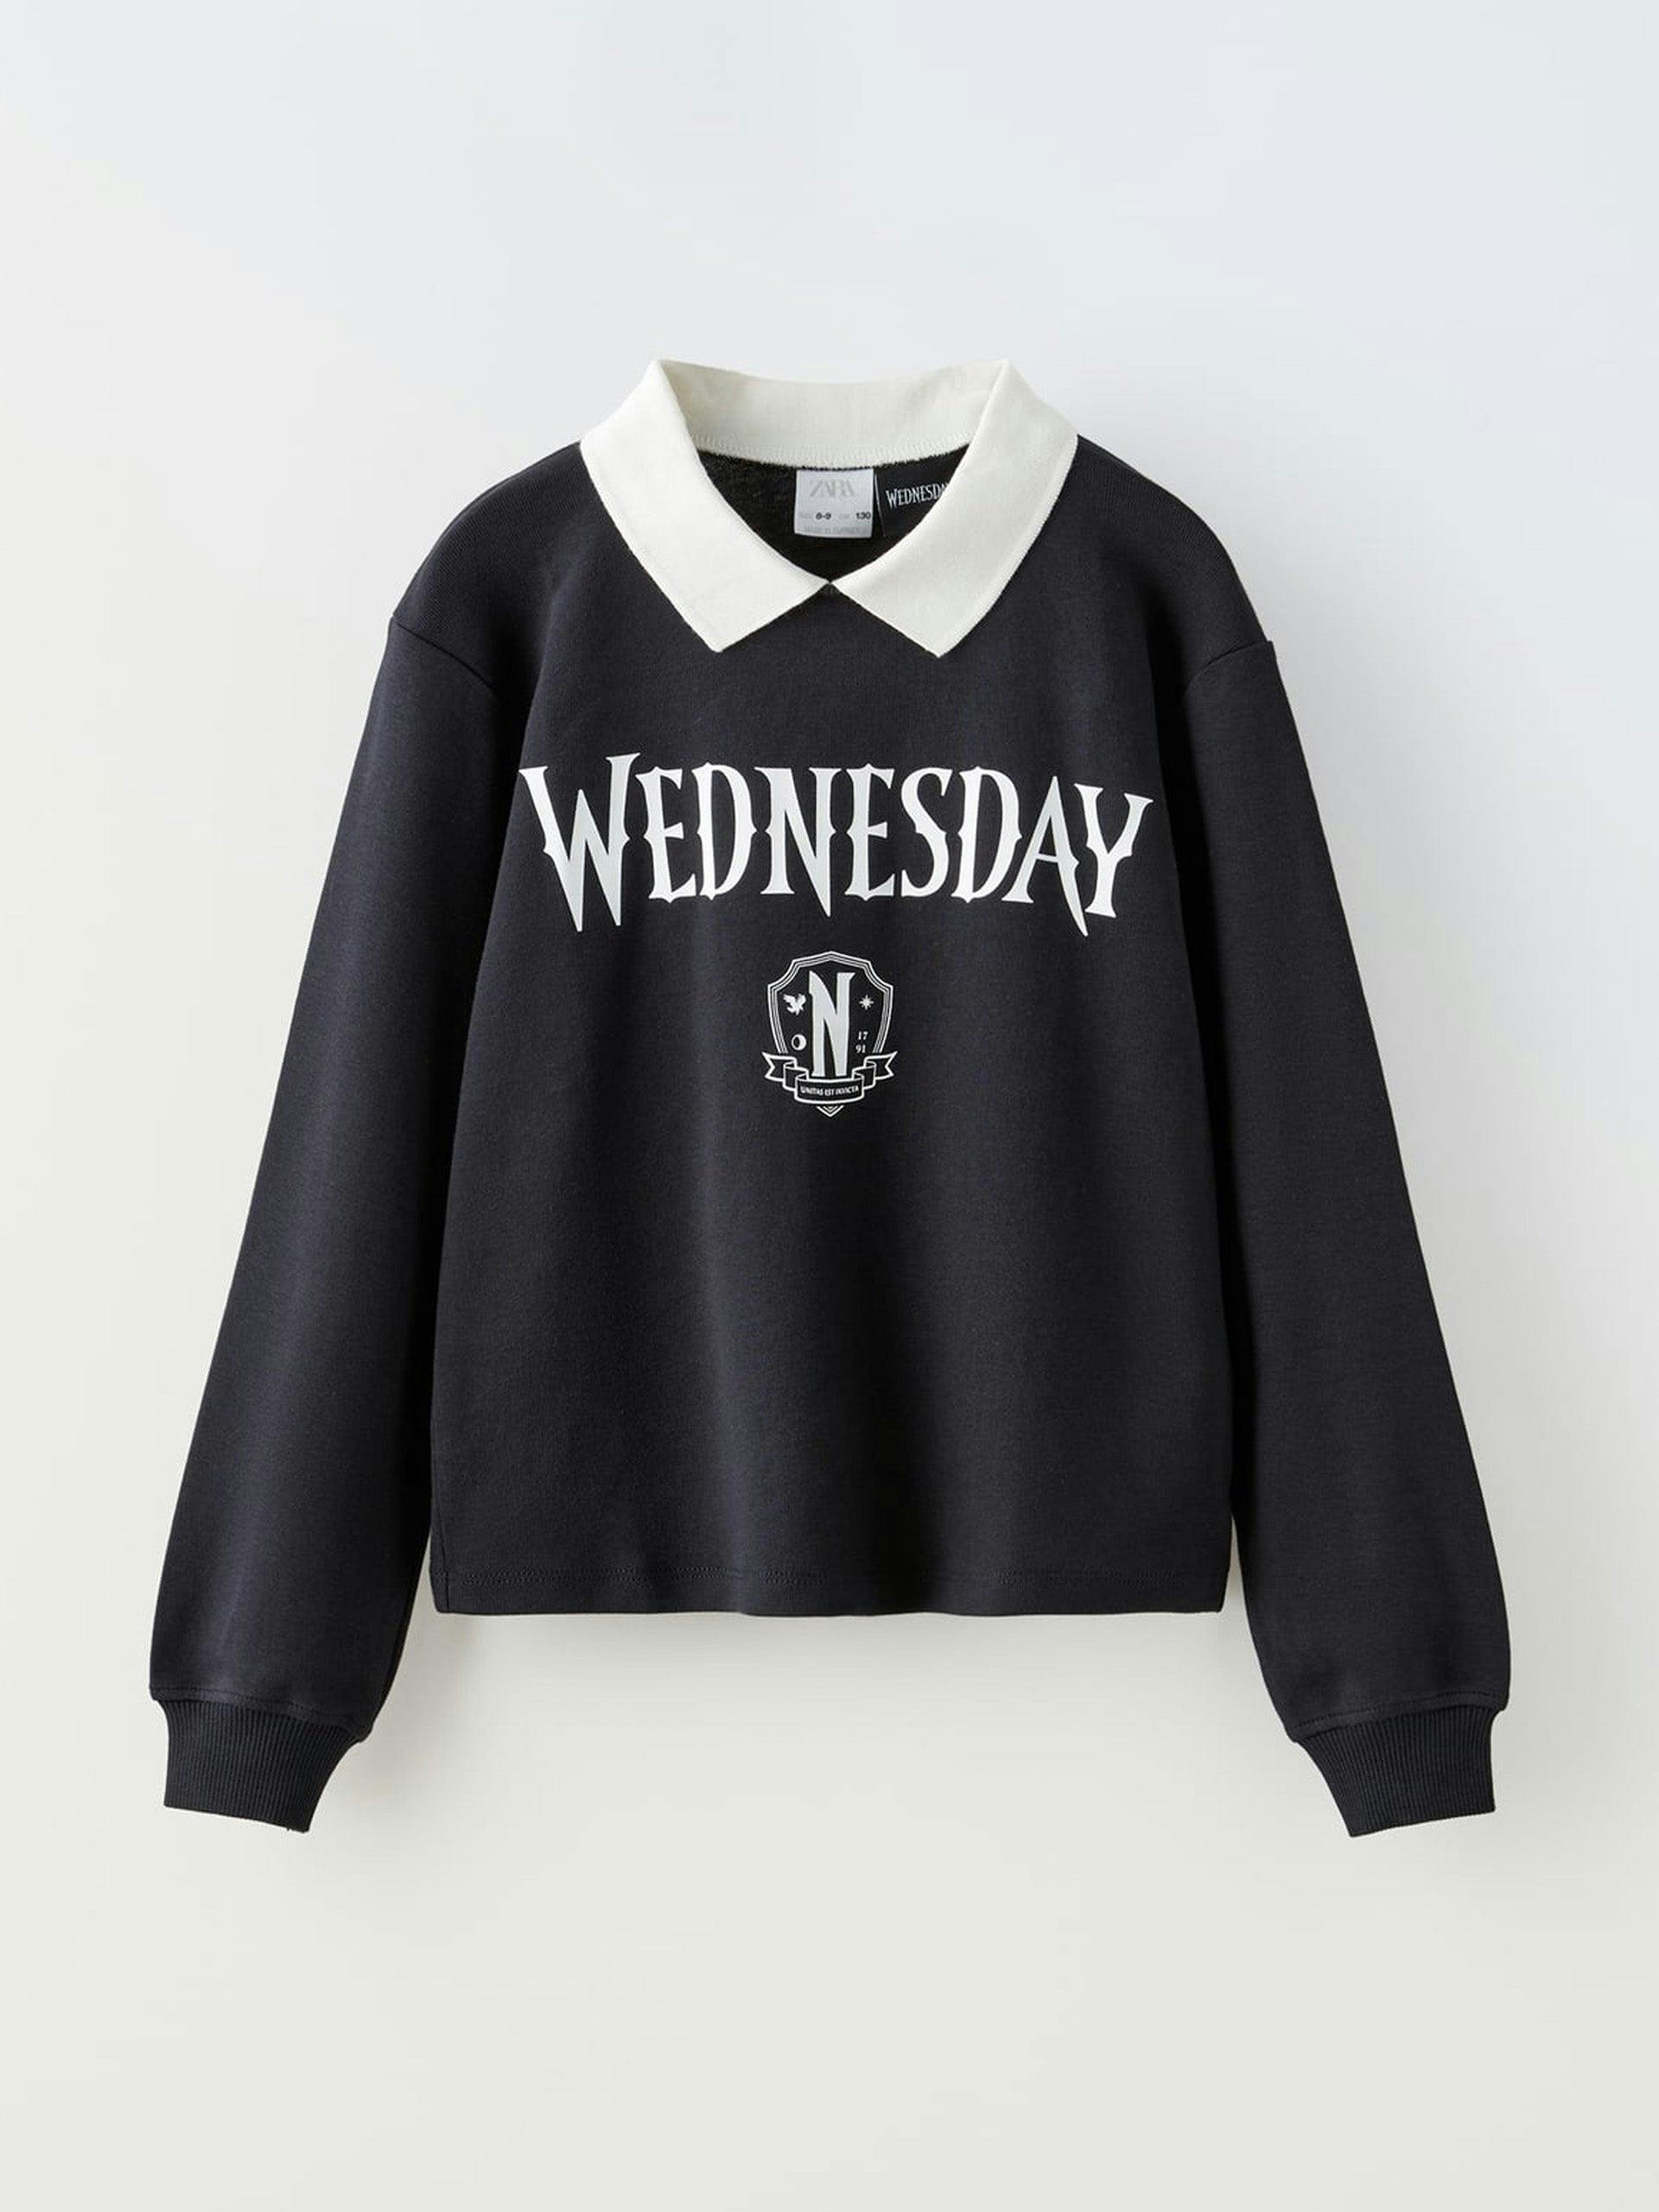 Wednesday polo shirt